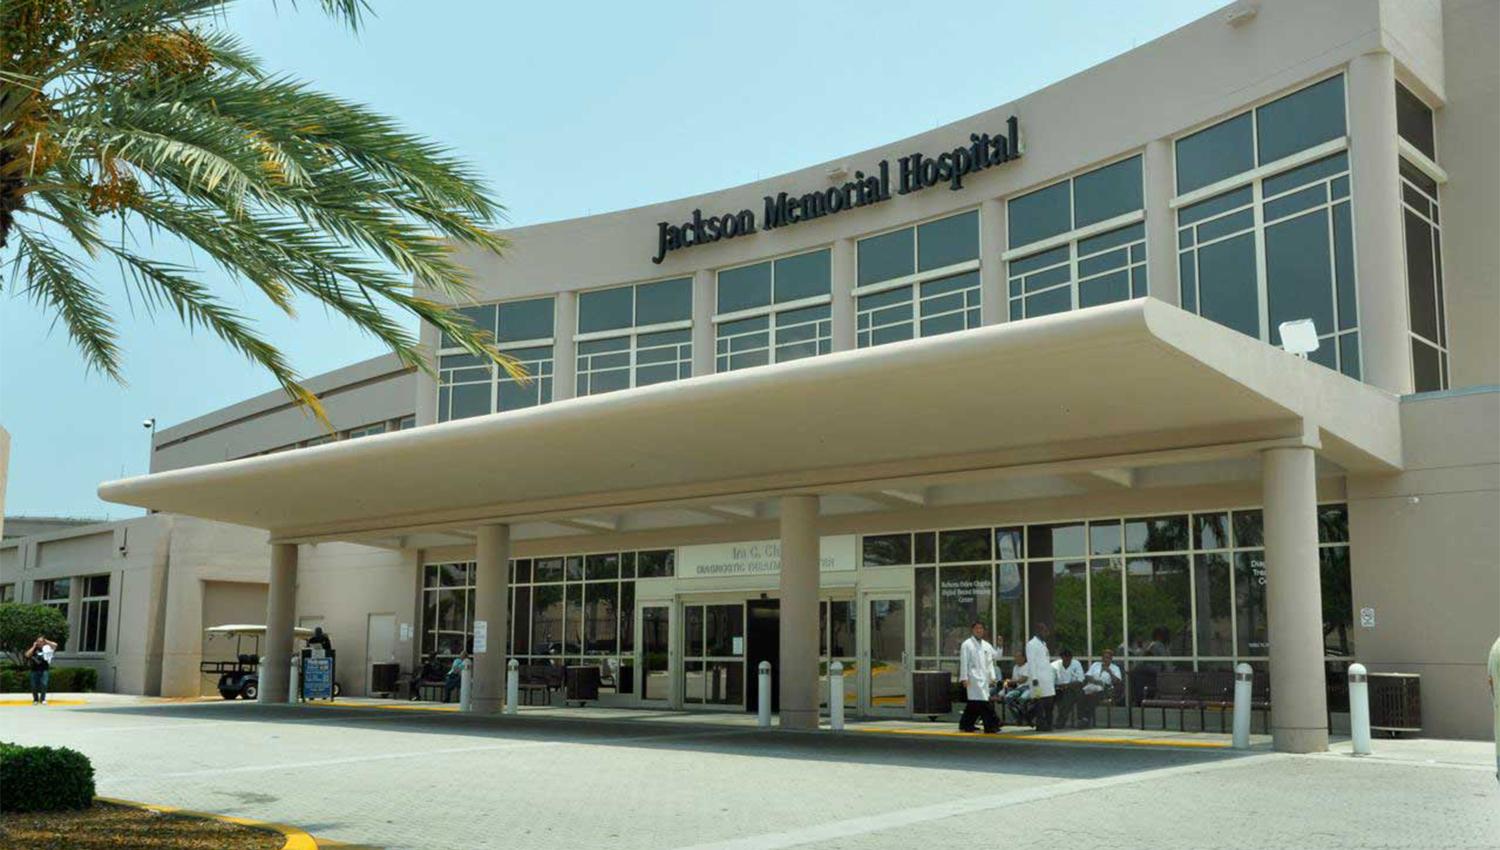 Hospital Jackson Memorial. Imagen sacada de Miamitodaynews.com